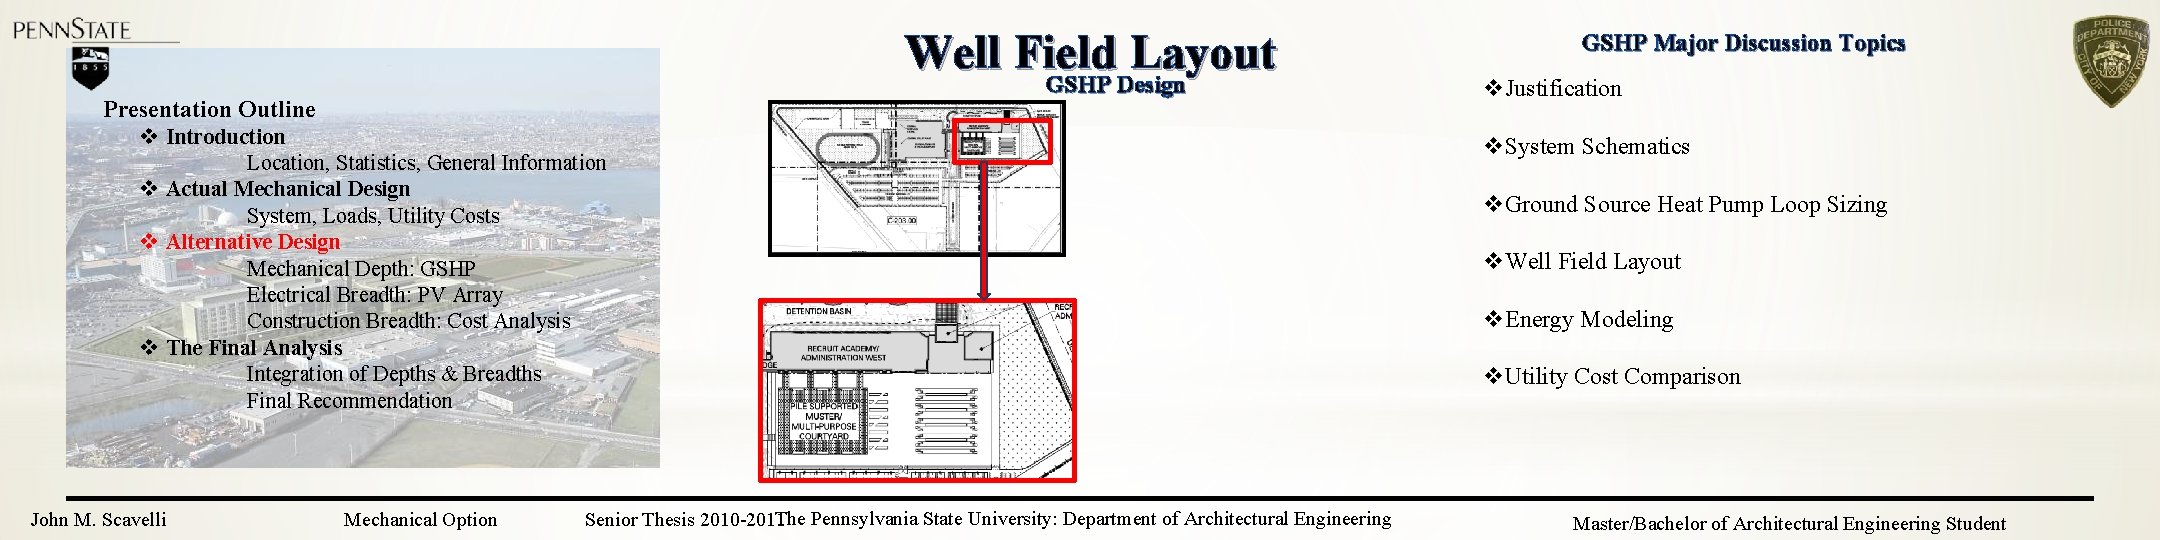 Well Field Layout GSHP Design Presentation Outline v Introduction Location, Statistics, General Information v